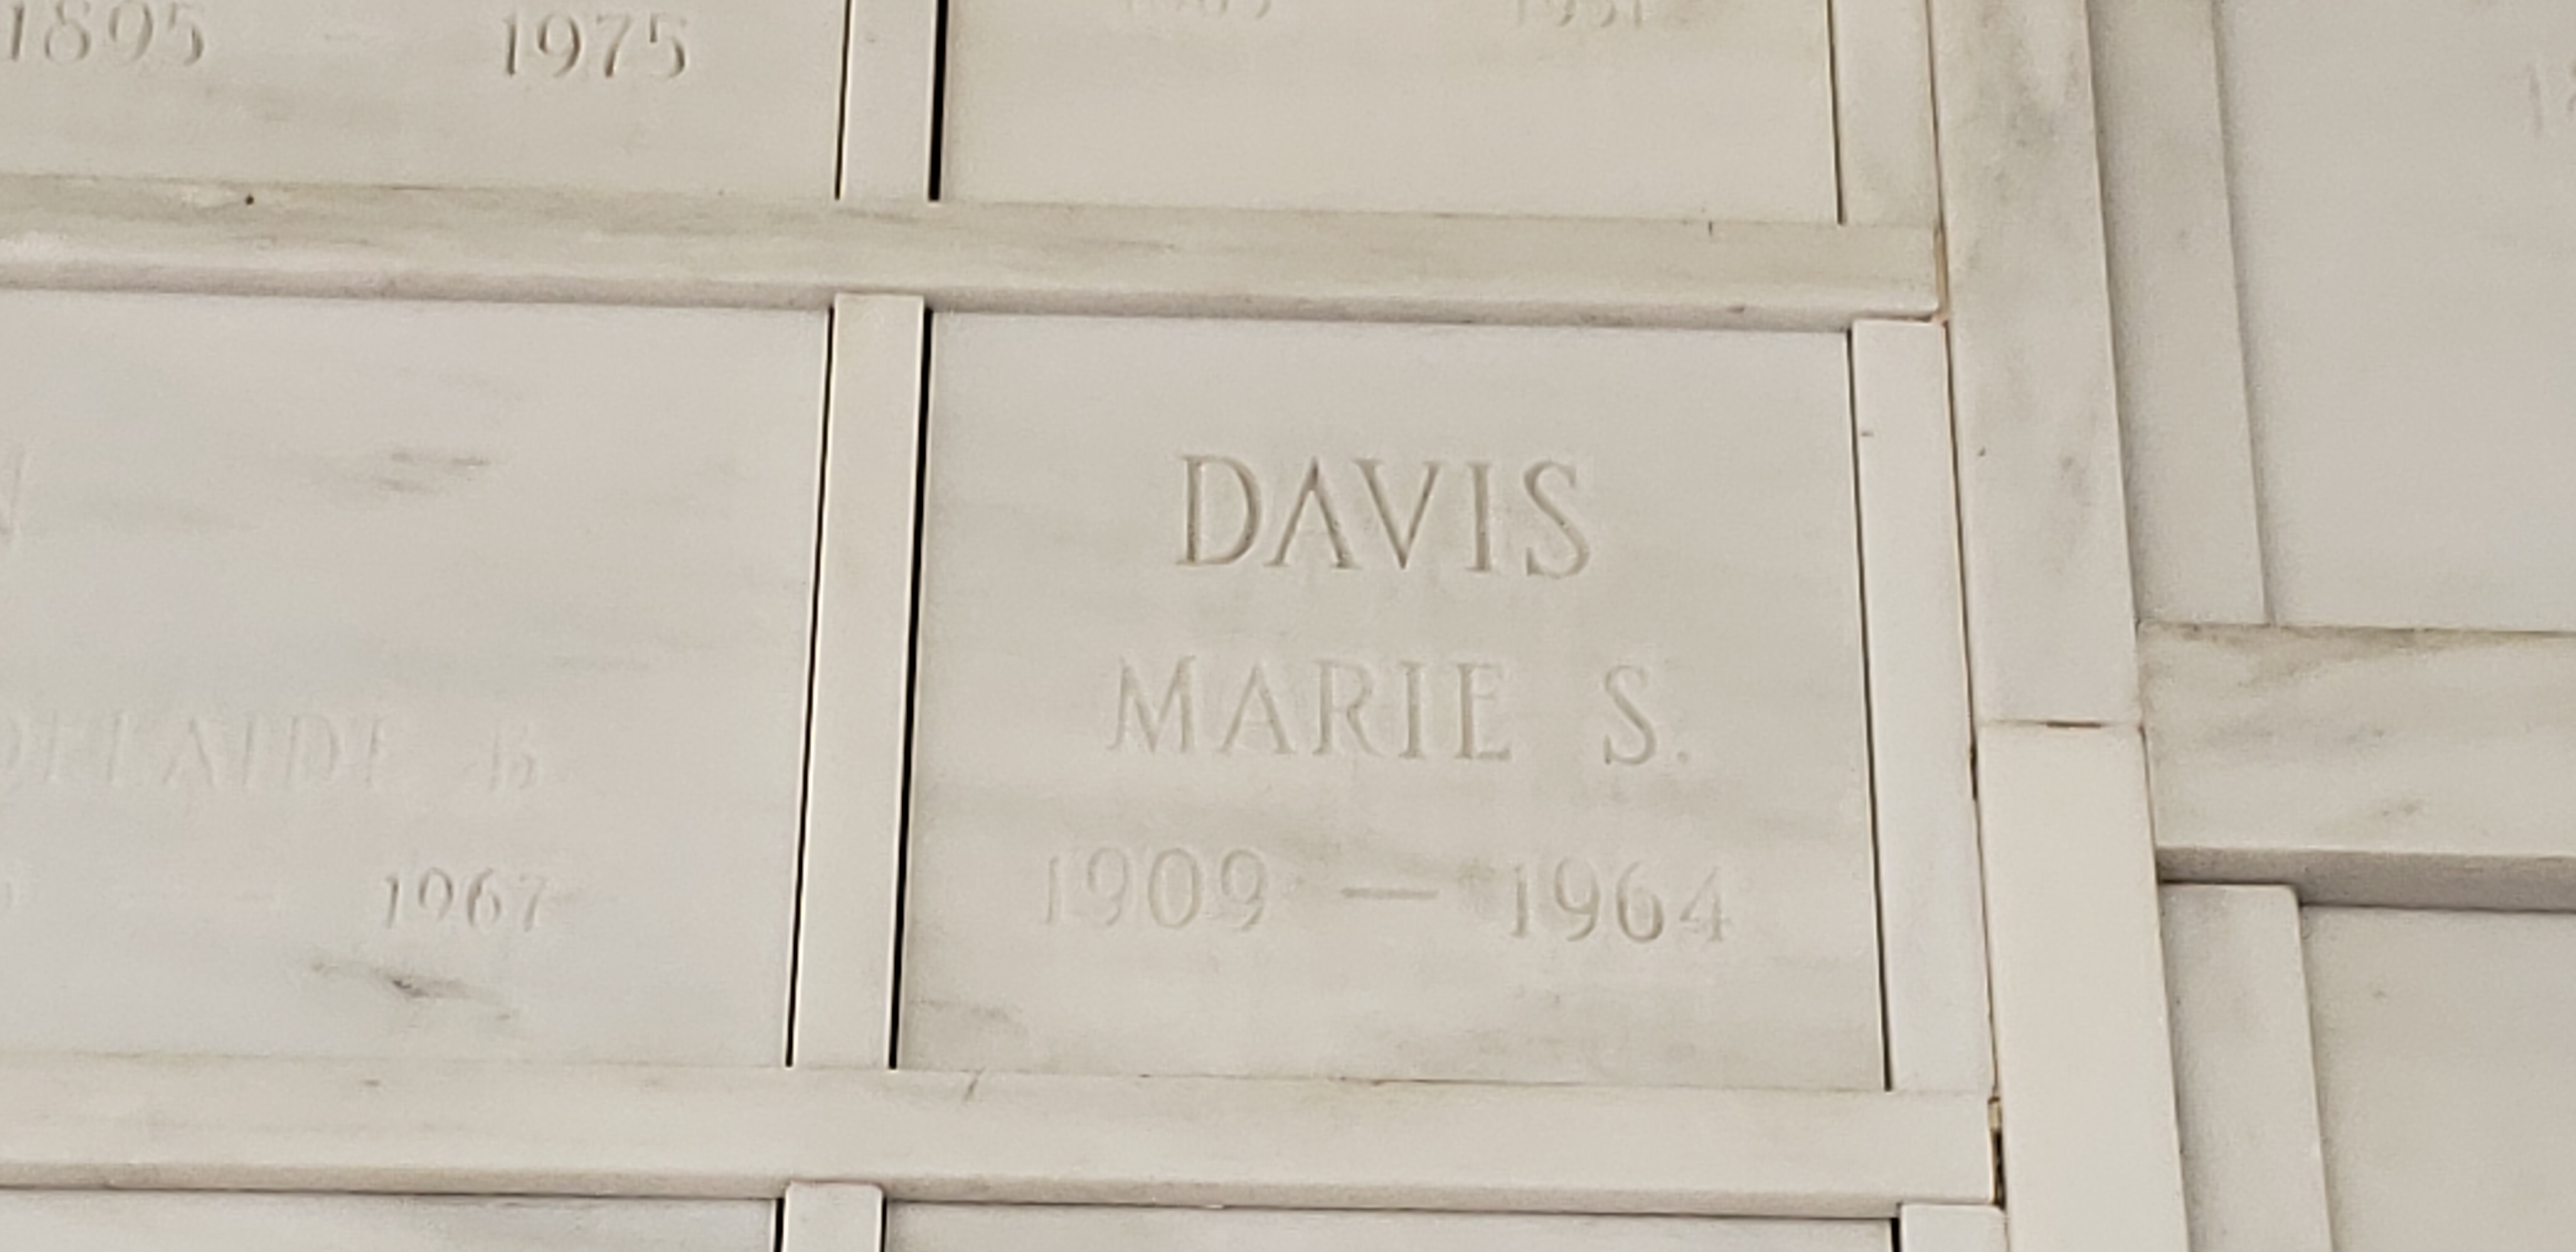 Marie S Davis